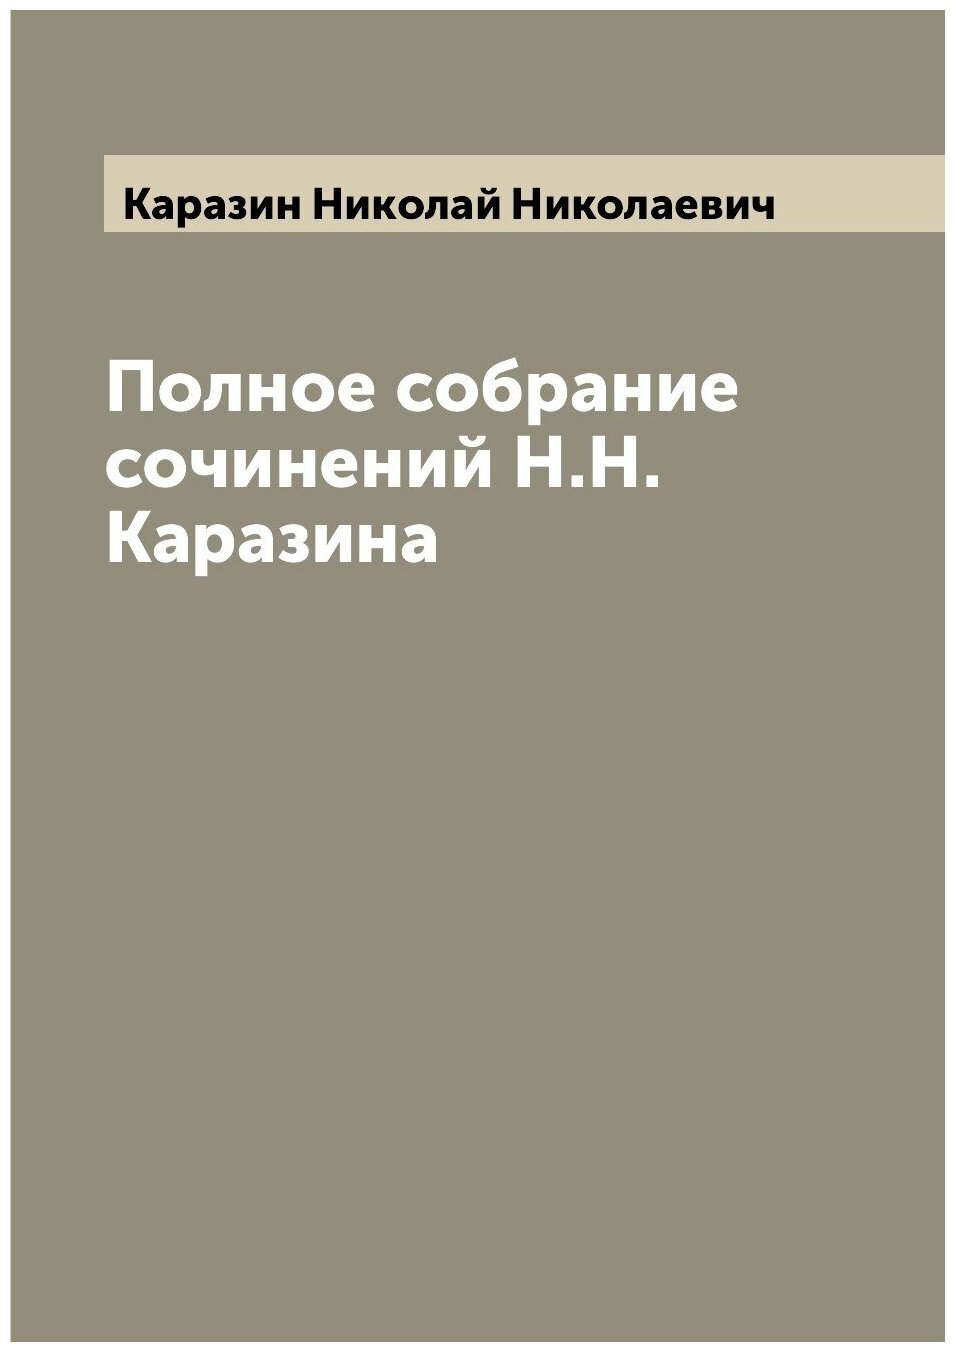 Полное собрание сочинений Н. Н. Каразина